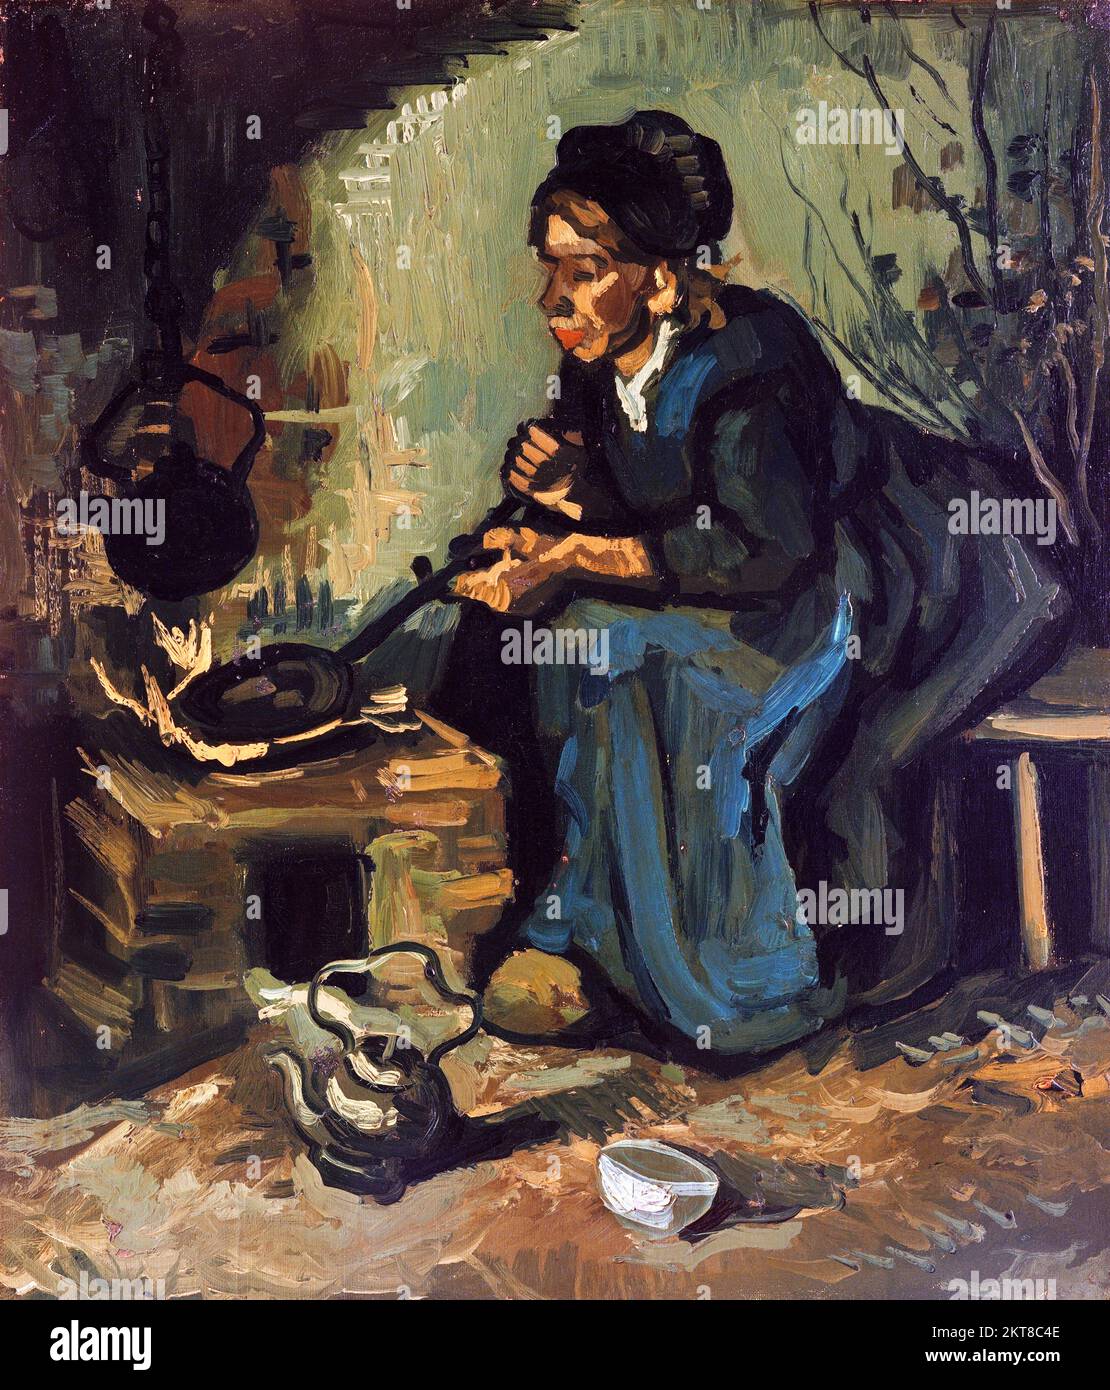 Mujer campesina cocinando junto a una chimenea por Vincent van Gogh (1853-1890), 1889 Foto de stock